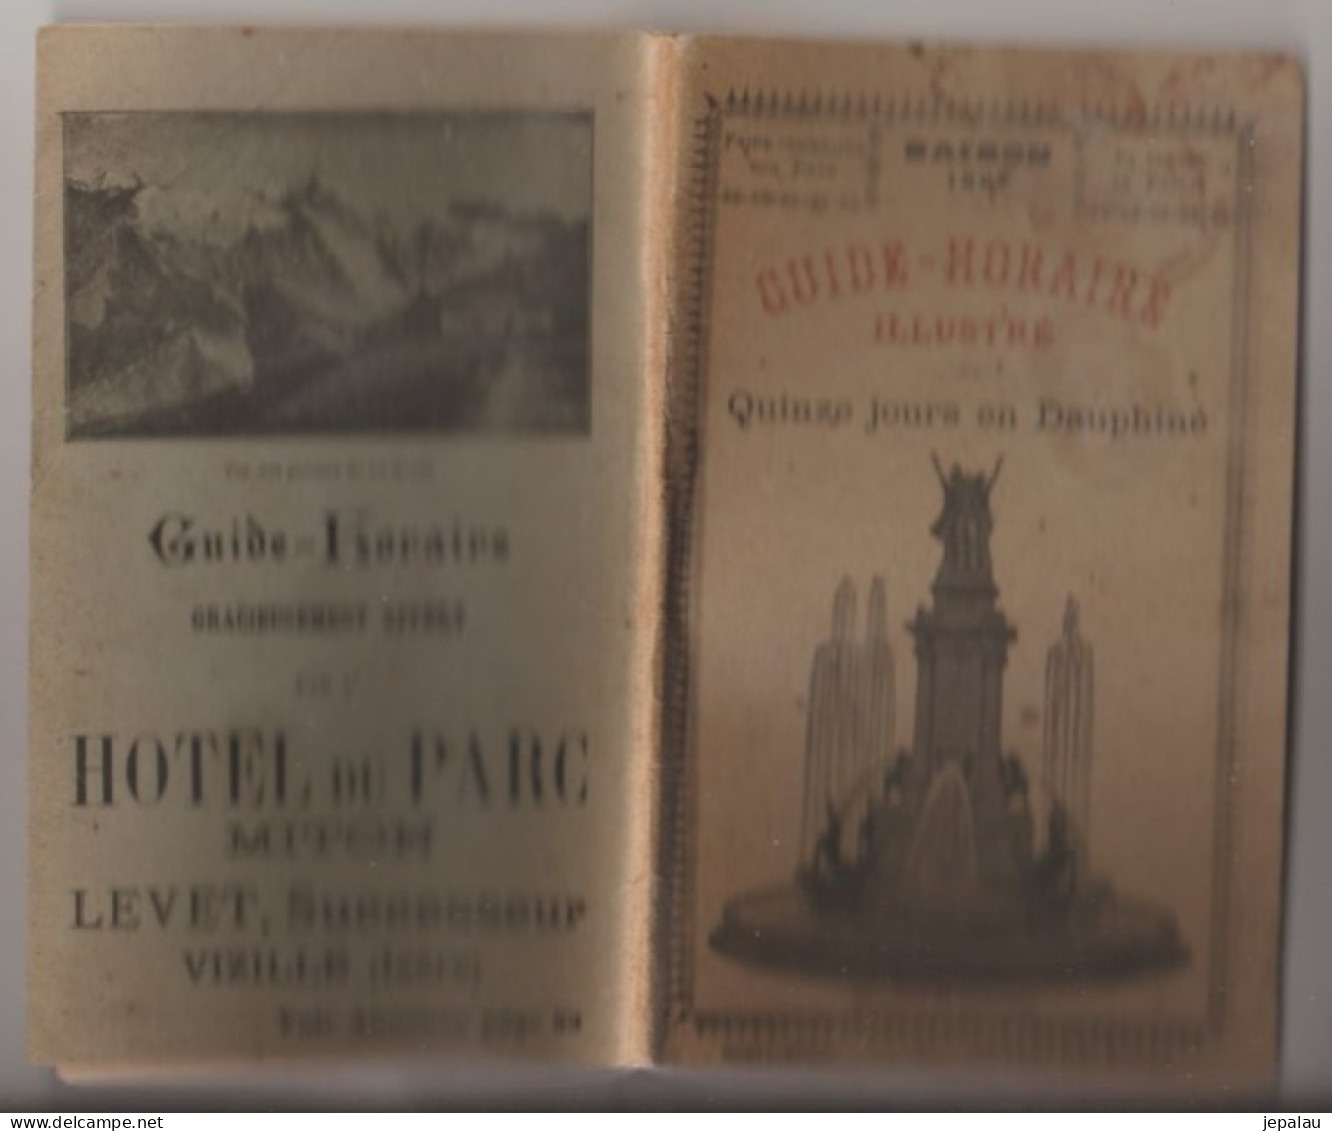 Guide Horaire Illustré / Quinze Jours En Dauphiné (1897) - Personen